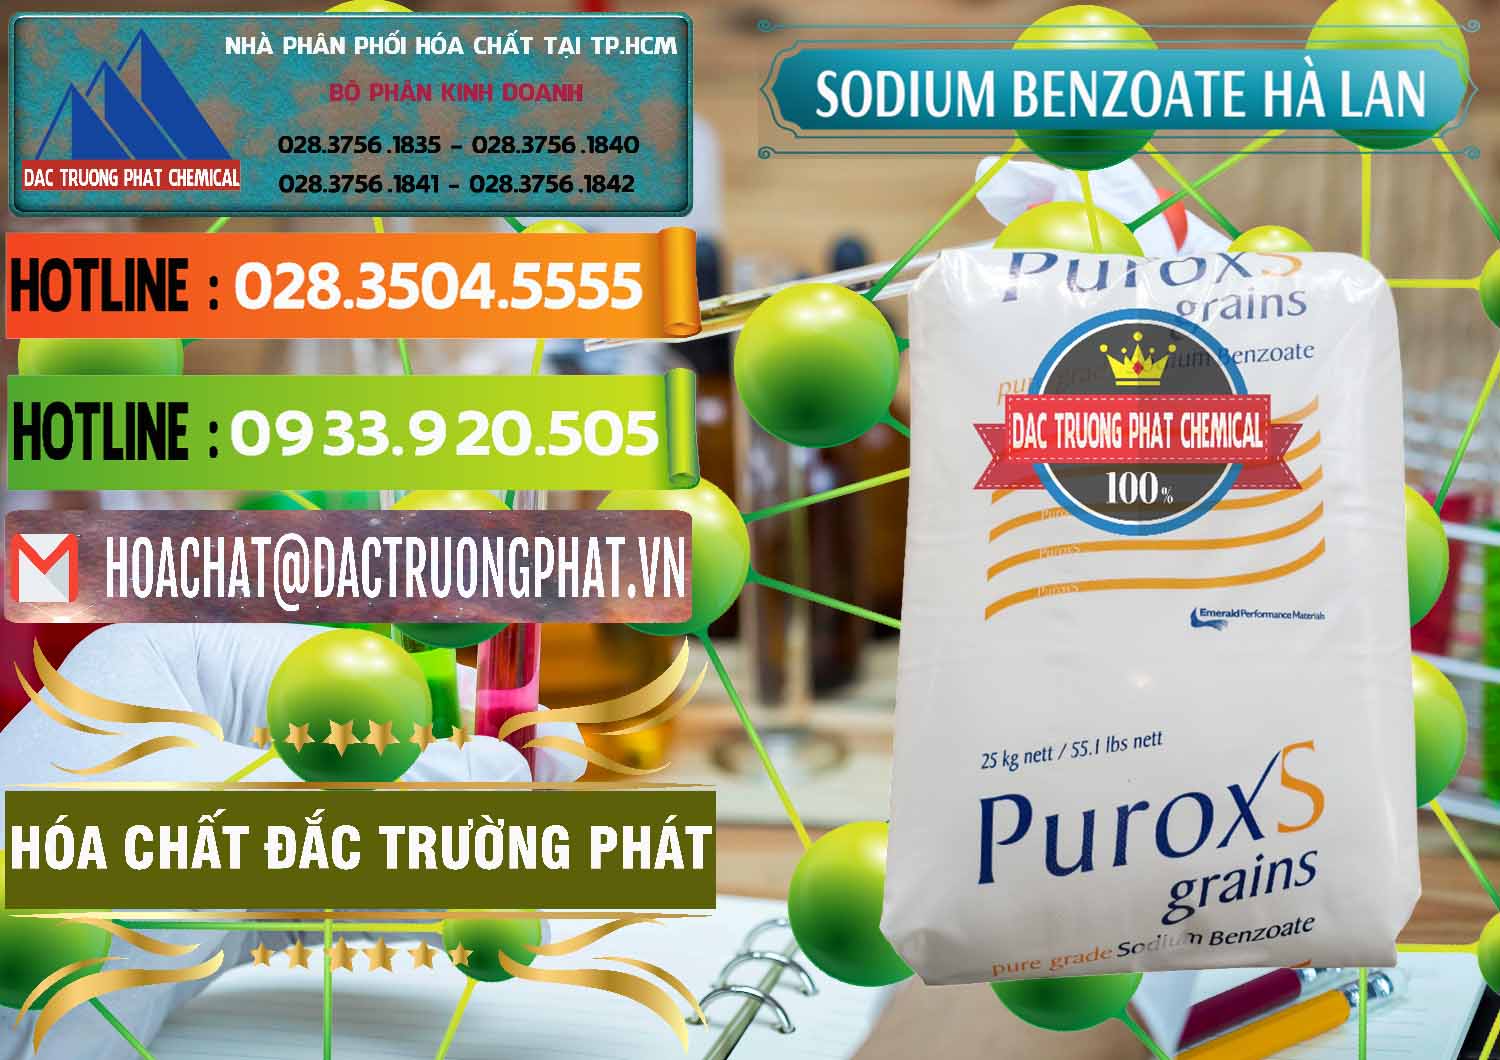 Đơn vị bán ( phân phối ) Sodium Benzoate - Mốc Bột Puroxs Hà Lan Netherlands - 0467 - Cty cung cấp & phân phối hóa chất tại TP.HCM - cungcaphoachat.com.vn